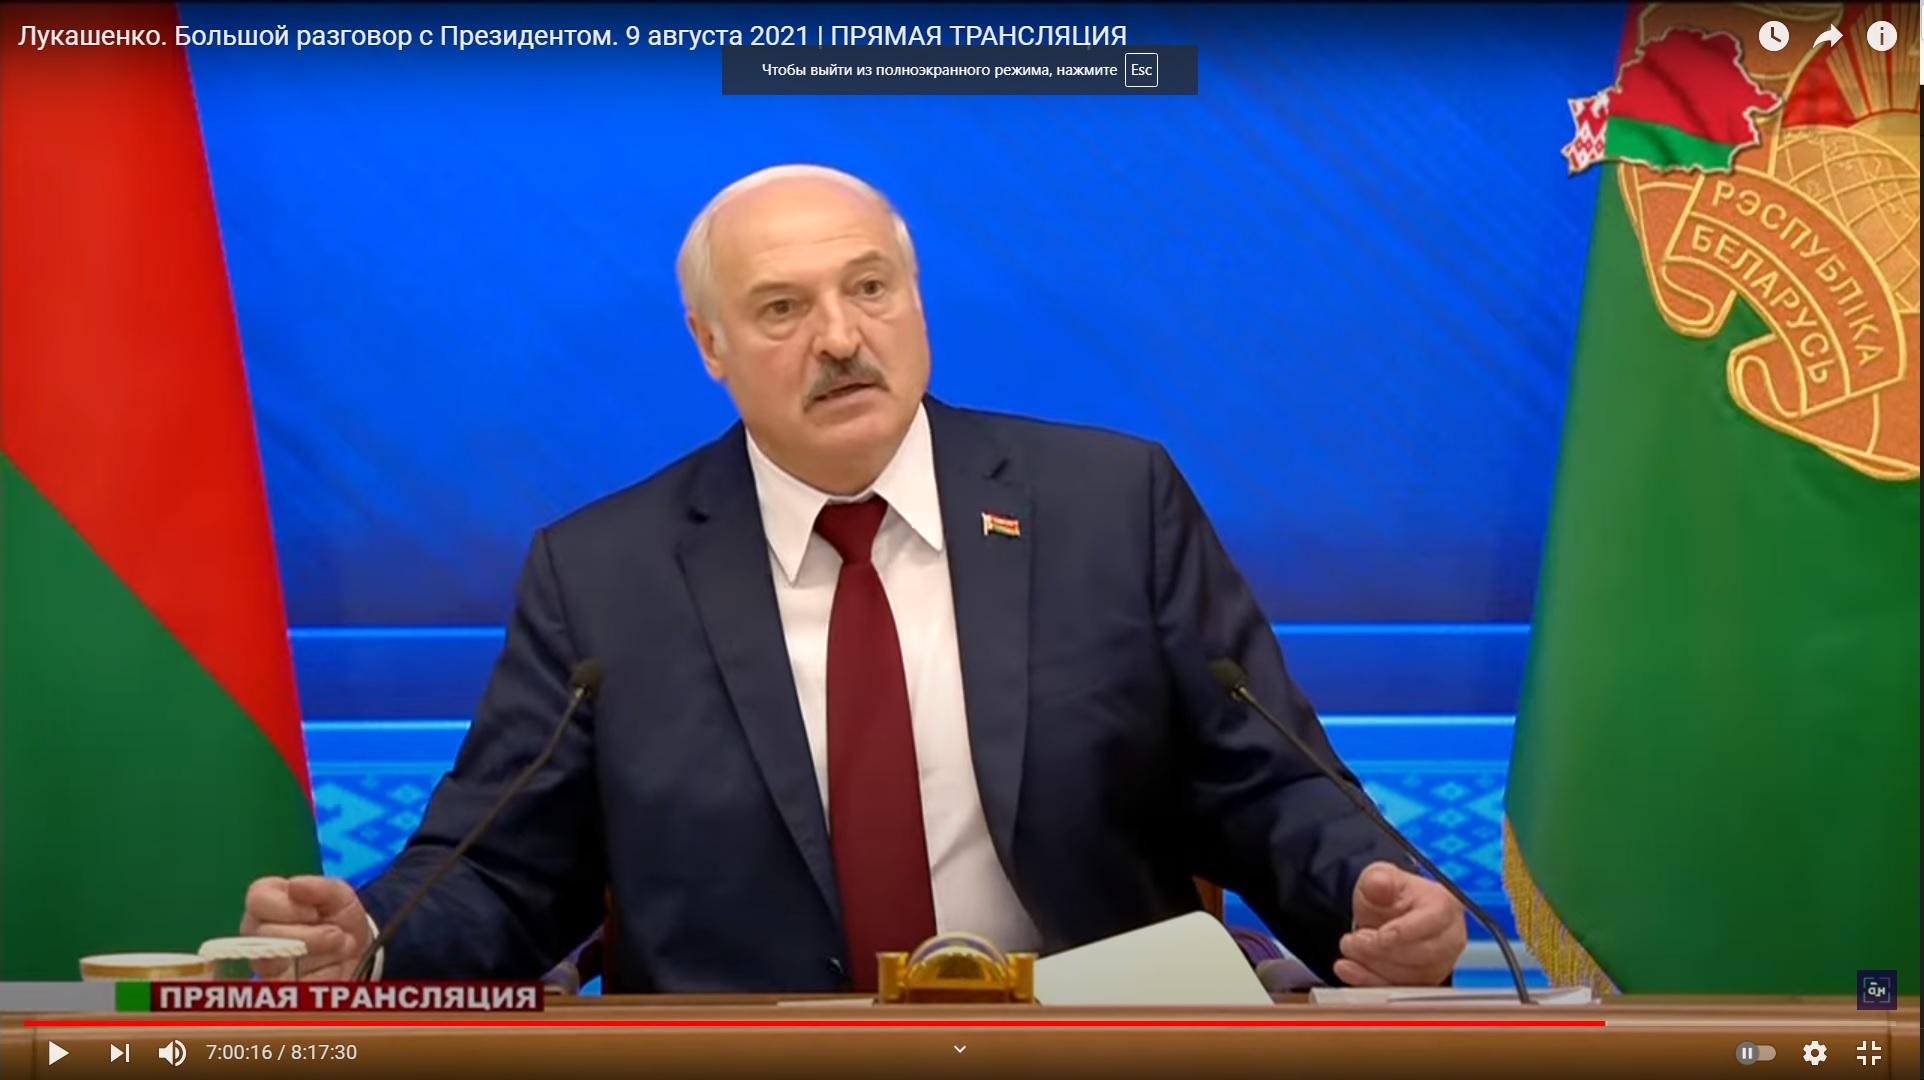 Страх и бессилие: поведенческий аналитик о манере выступлений Лукашенко